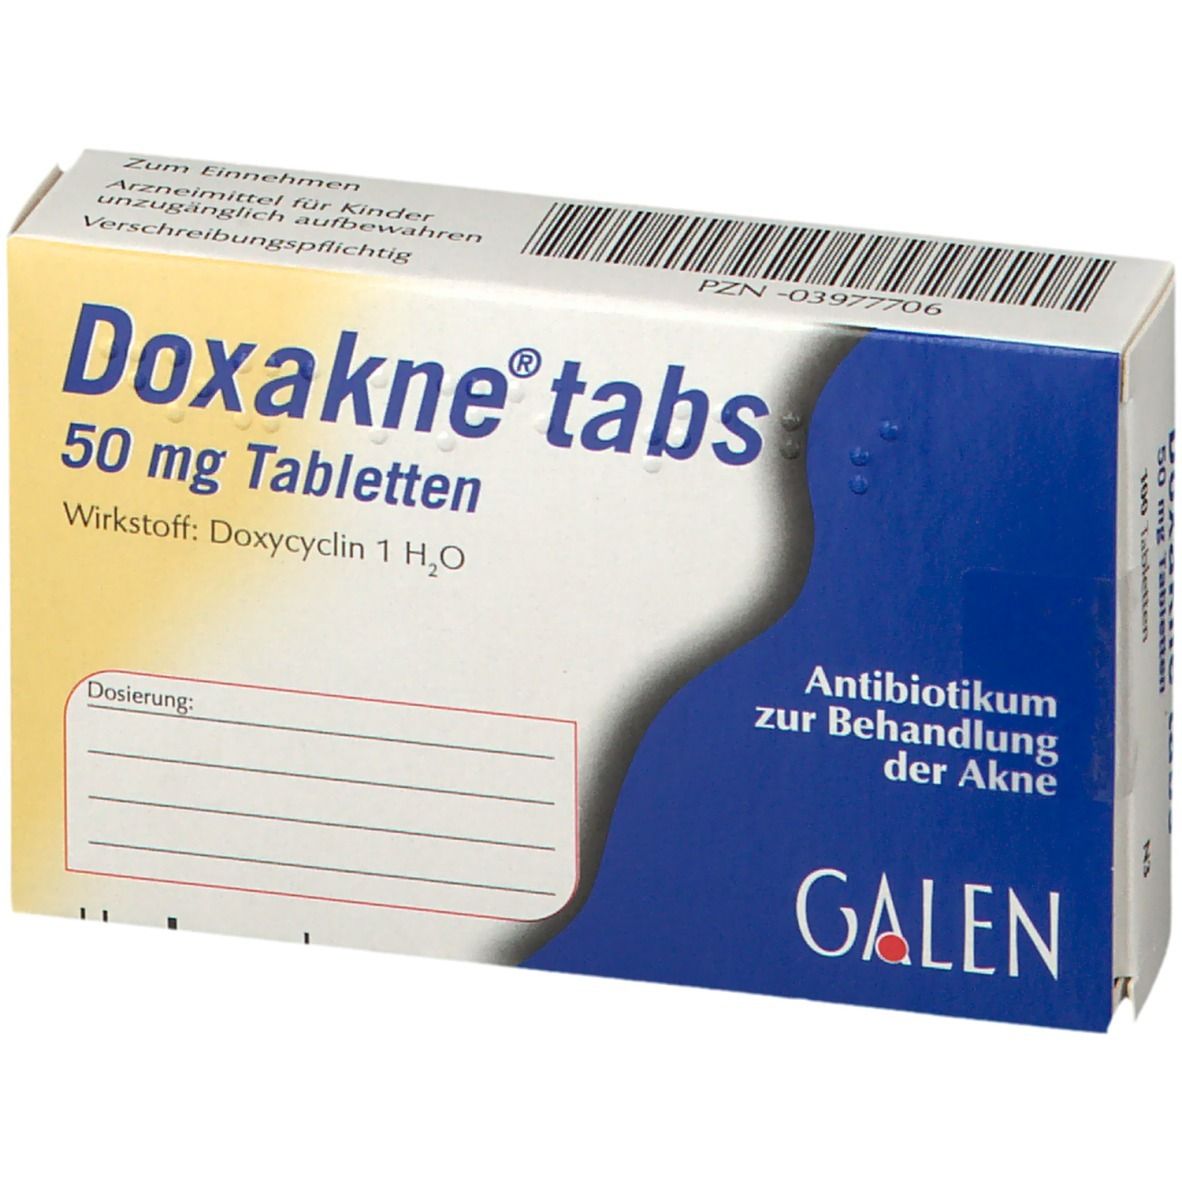 Doxakne® tabs 50 mg